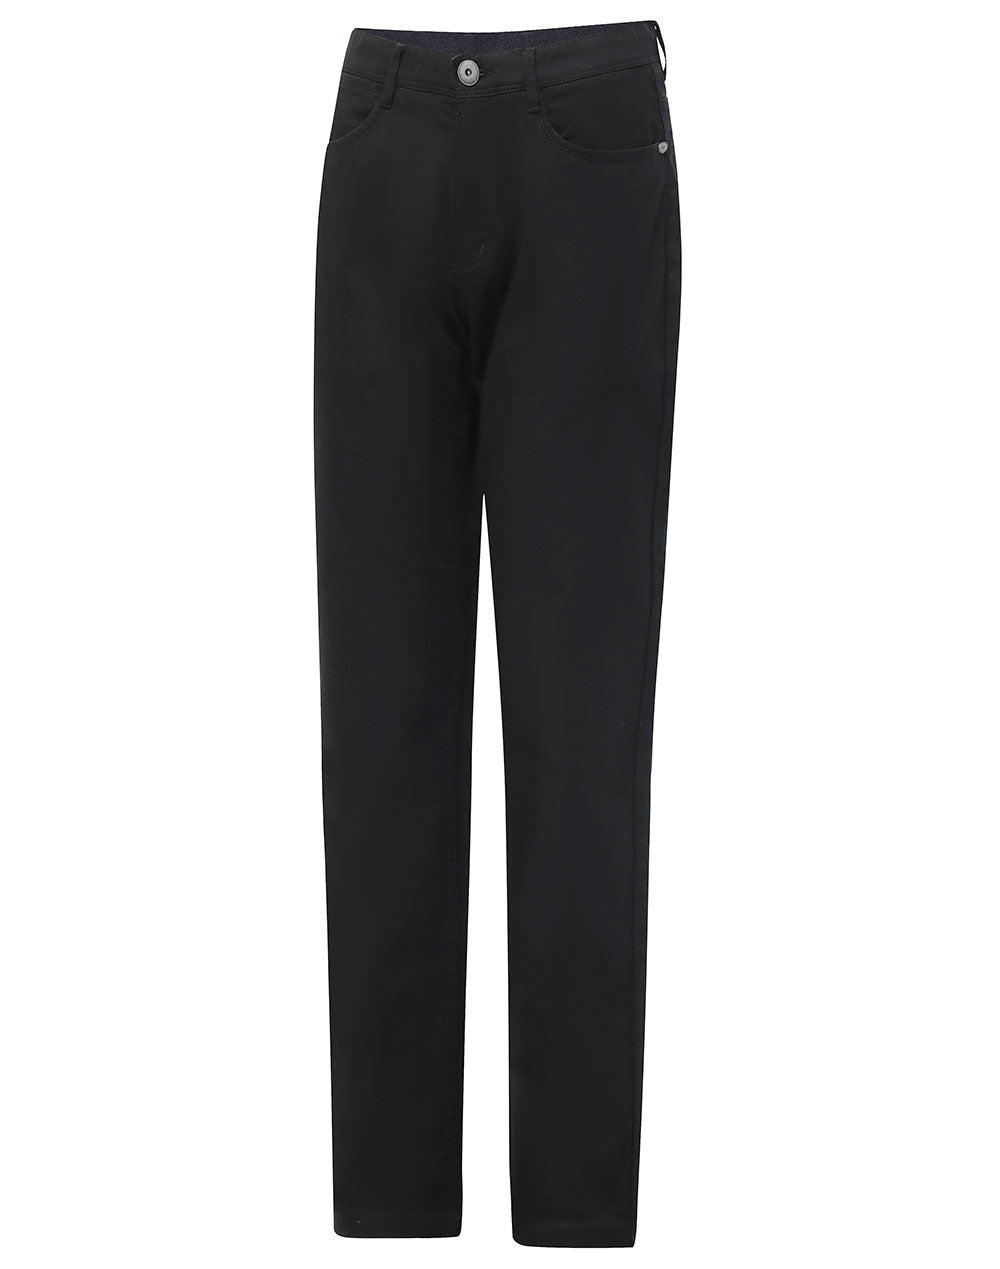 Women's Jean Style Flexi Chino Pants M9392